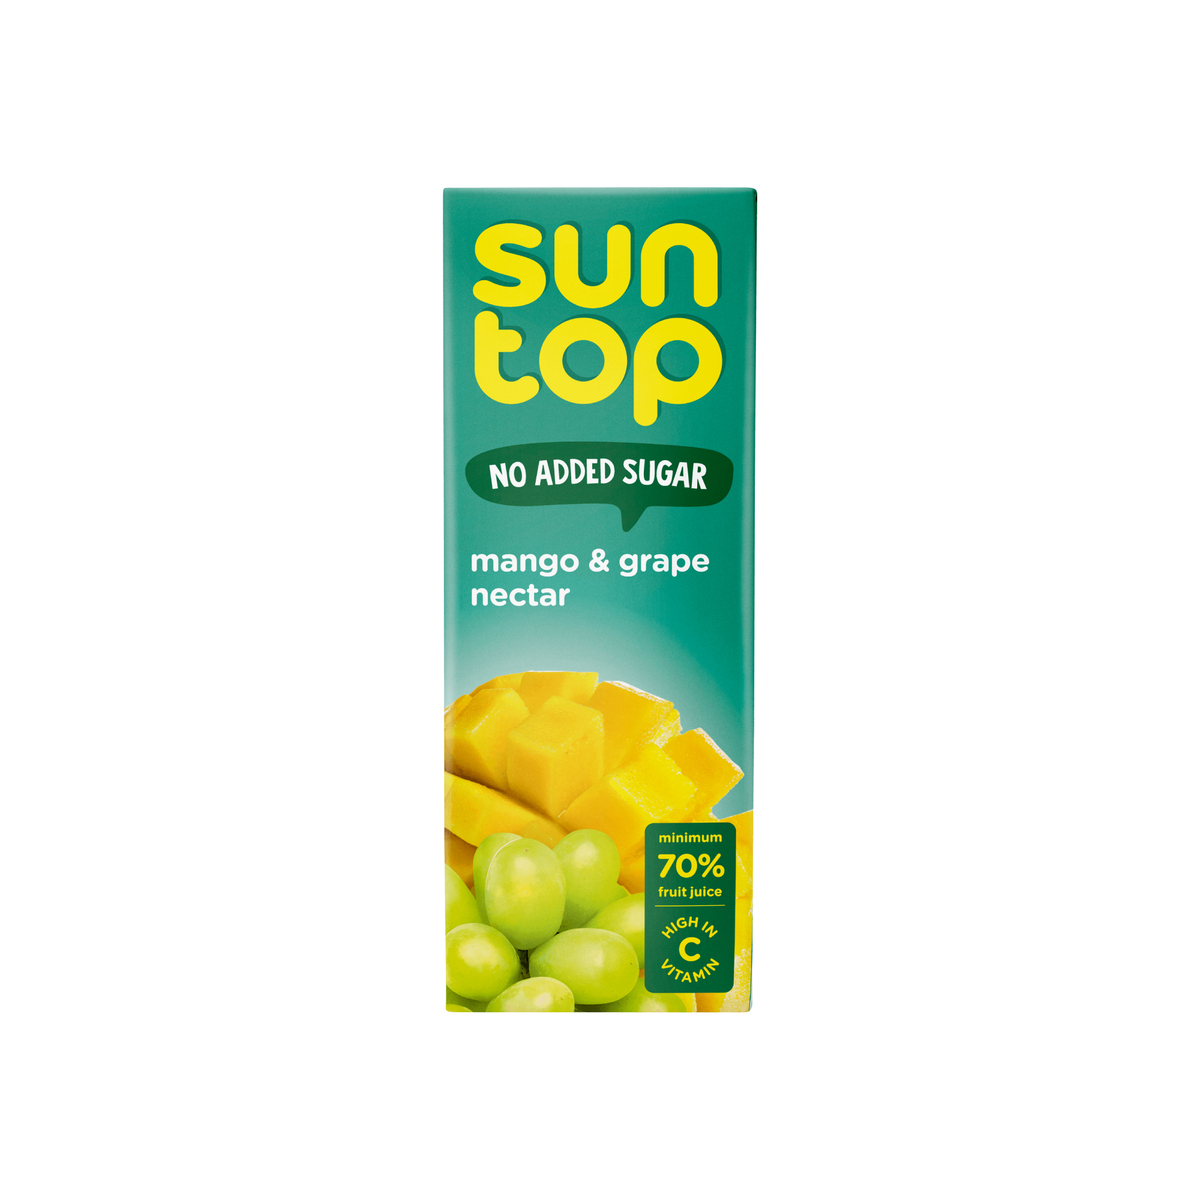 Suntop Mango & Grape Nectar No Added Sugar 6 x 180 ml